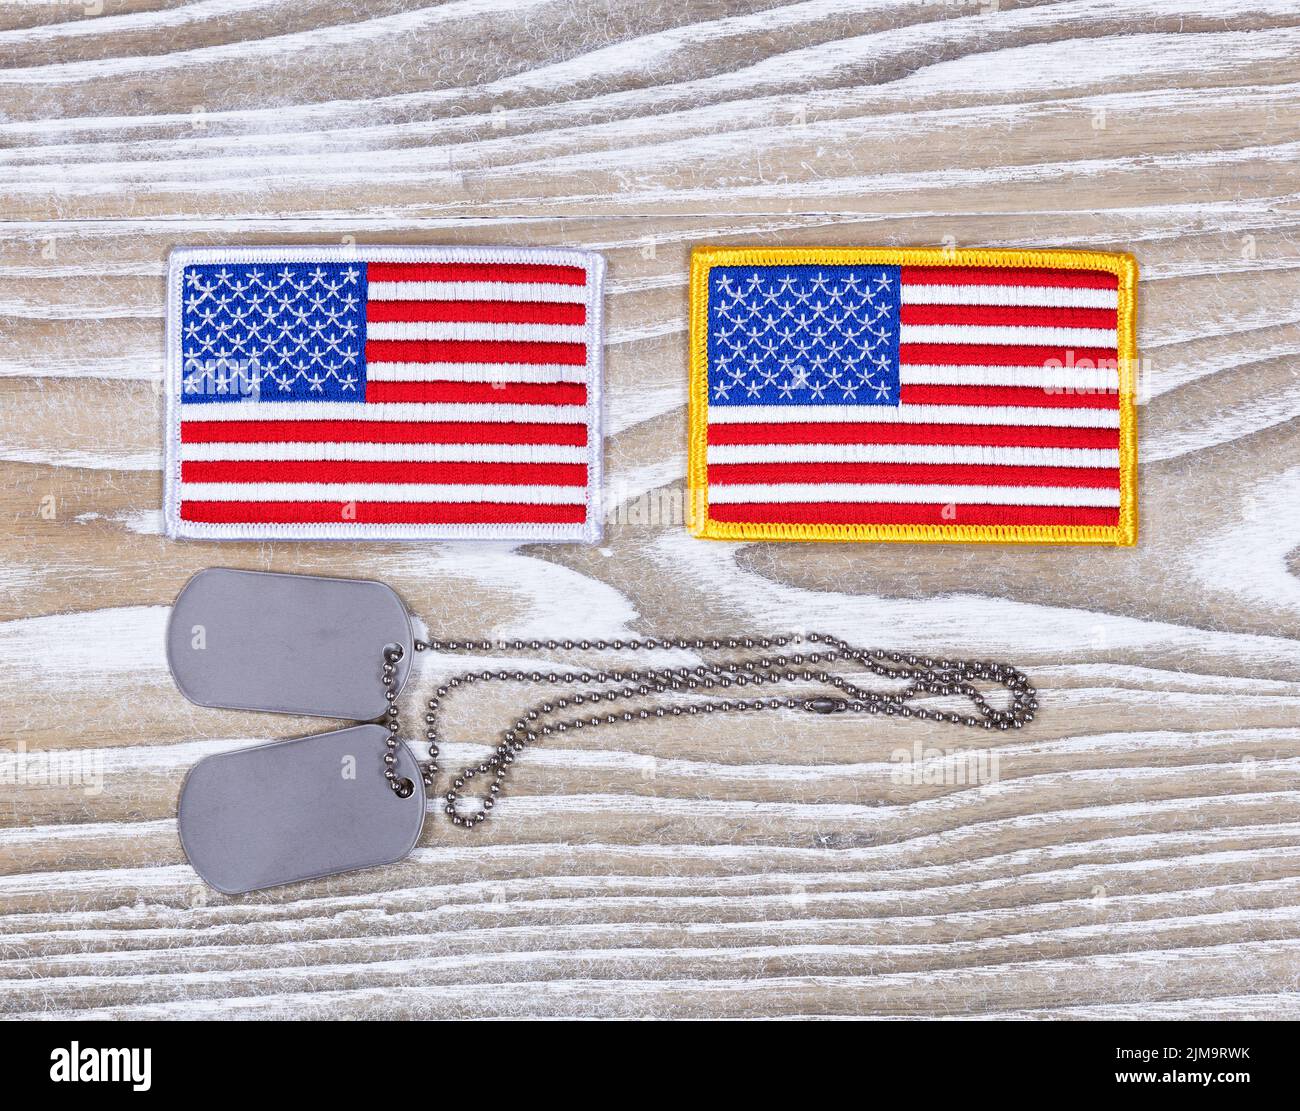 Petits drapeaux américains et étiquettes d'identification militaires sur bois blanc rustique Banque D'Images